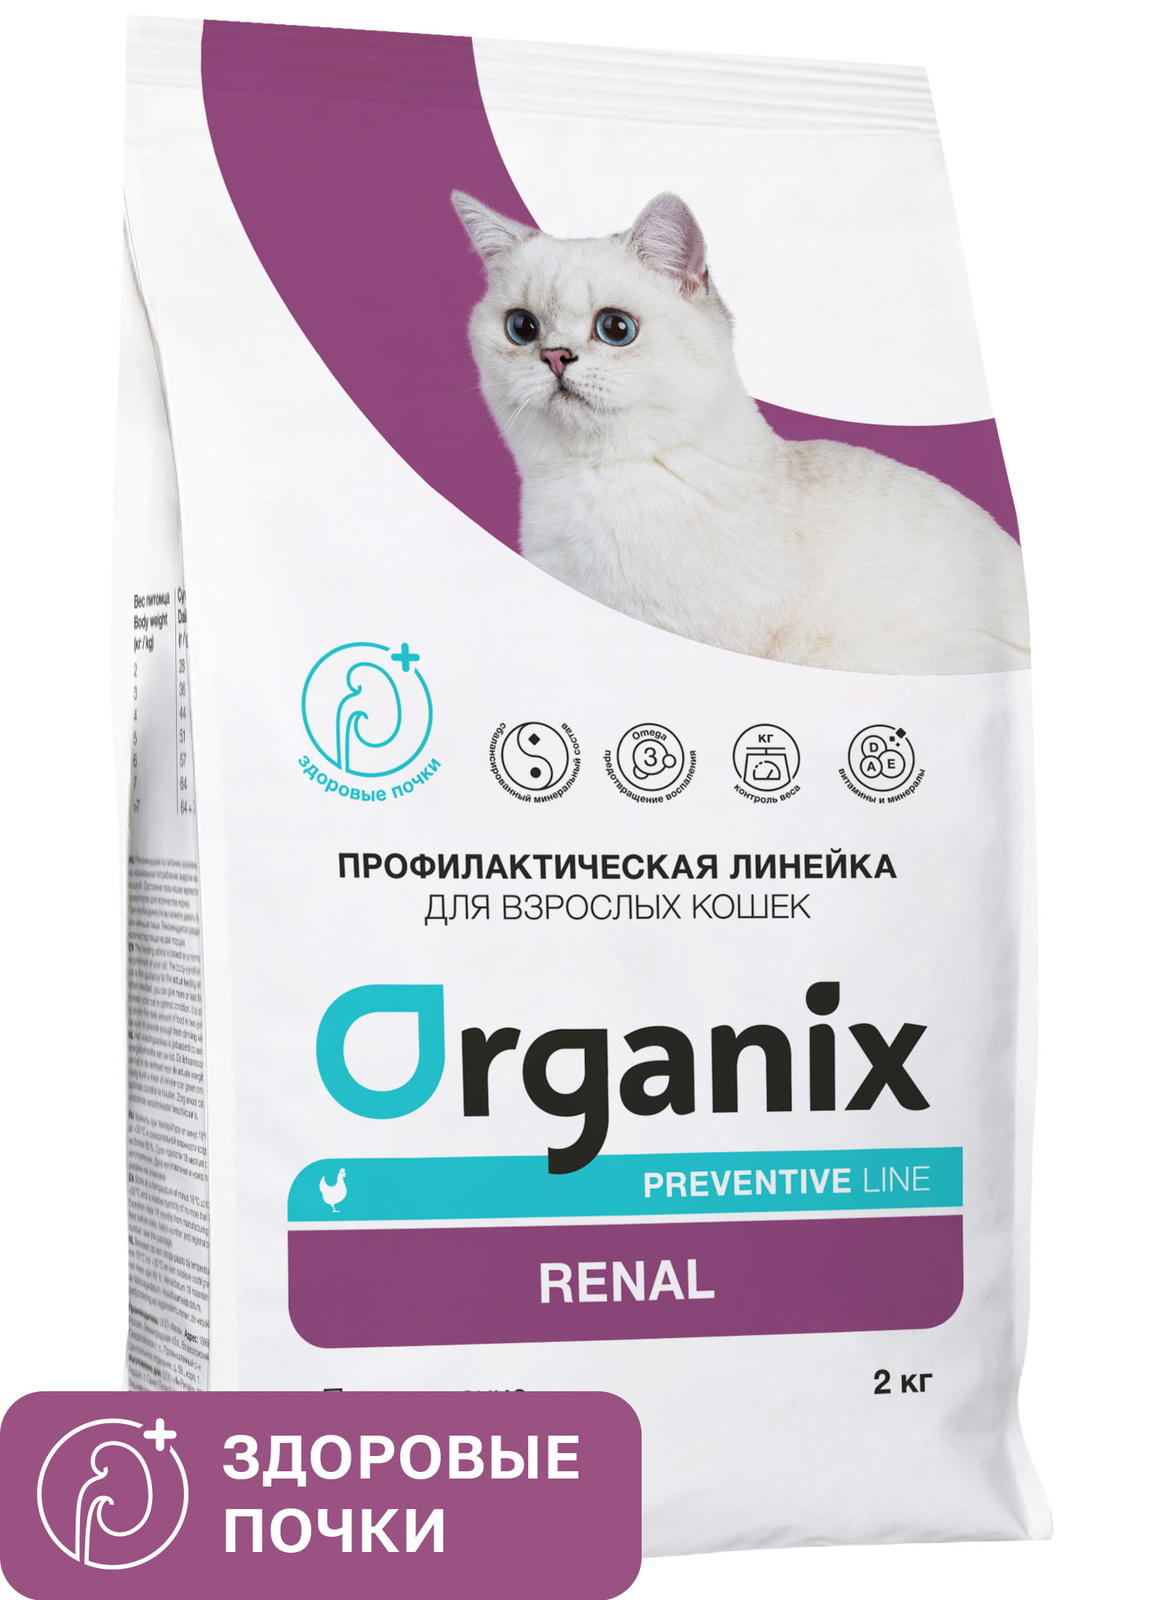 Organix Preventive Line Organix Preventive Line renal сухой корм для кошек Поддержание здоровья почек (600 г) organix preventive line organix preventive line hepatic сухой корм для кошек поддержание здоровья печени 600 г